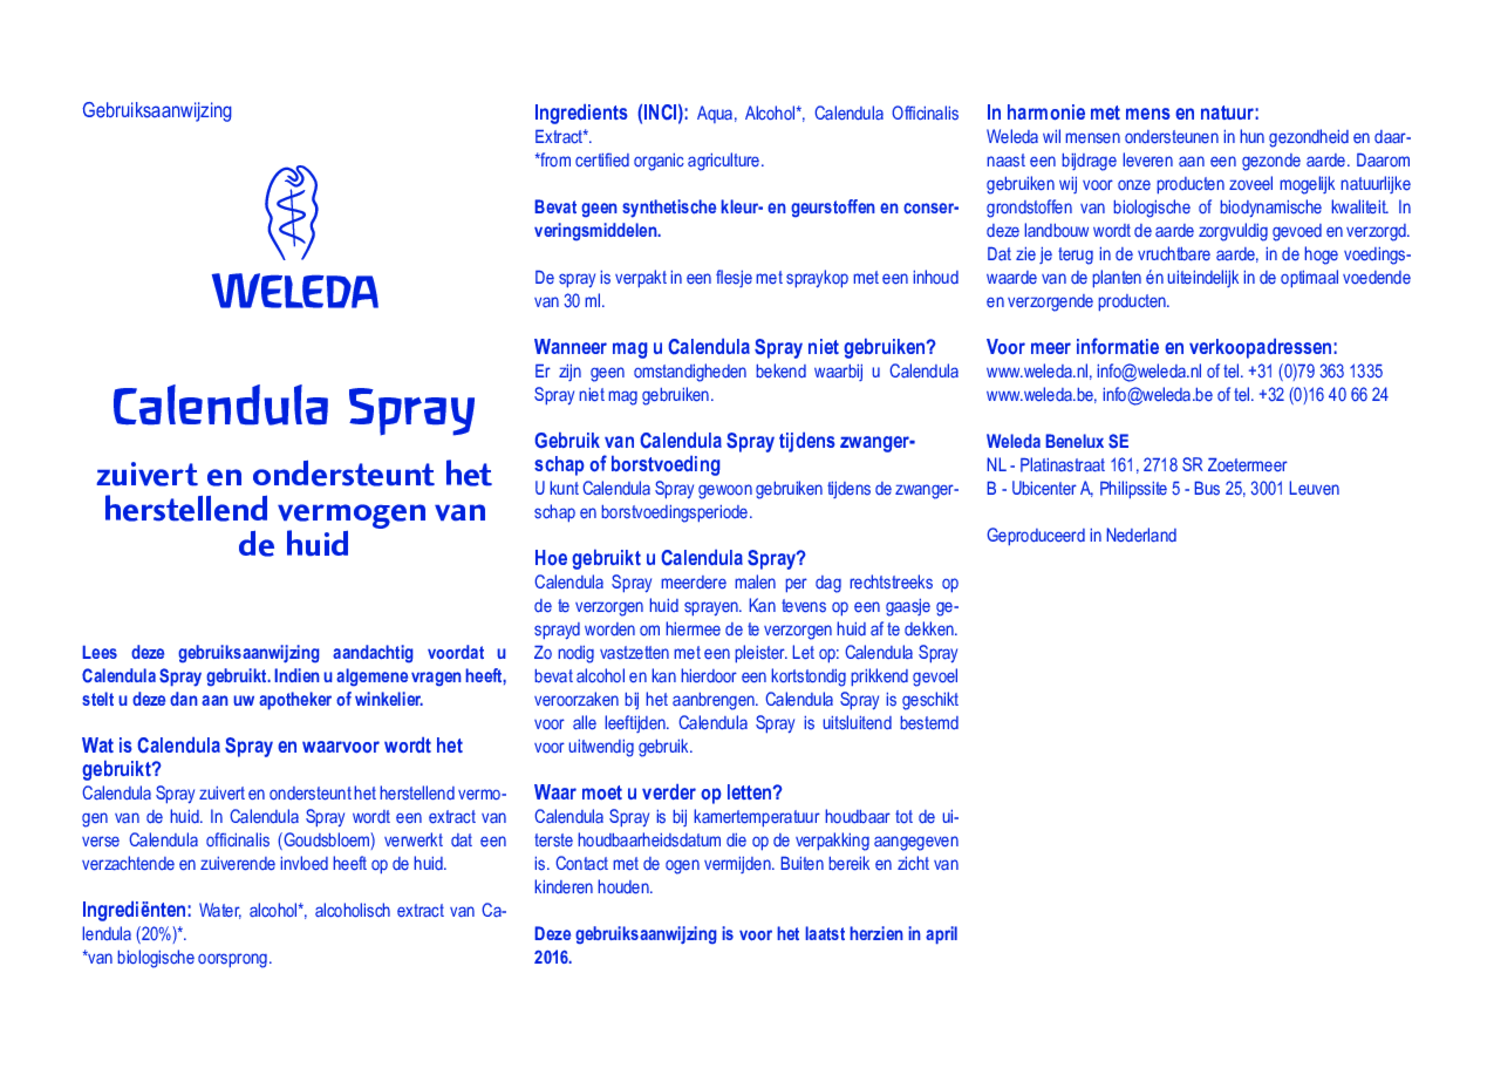 Calendula Spray afbeelding van document #1, gebruiksaanwijzing